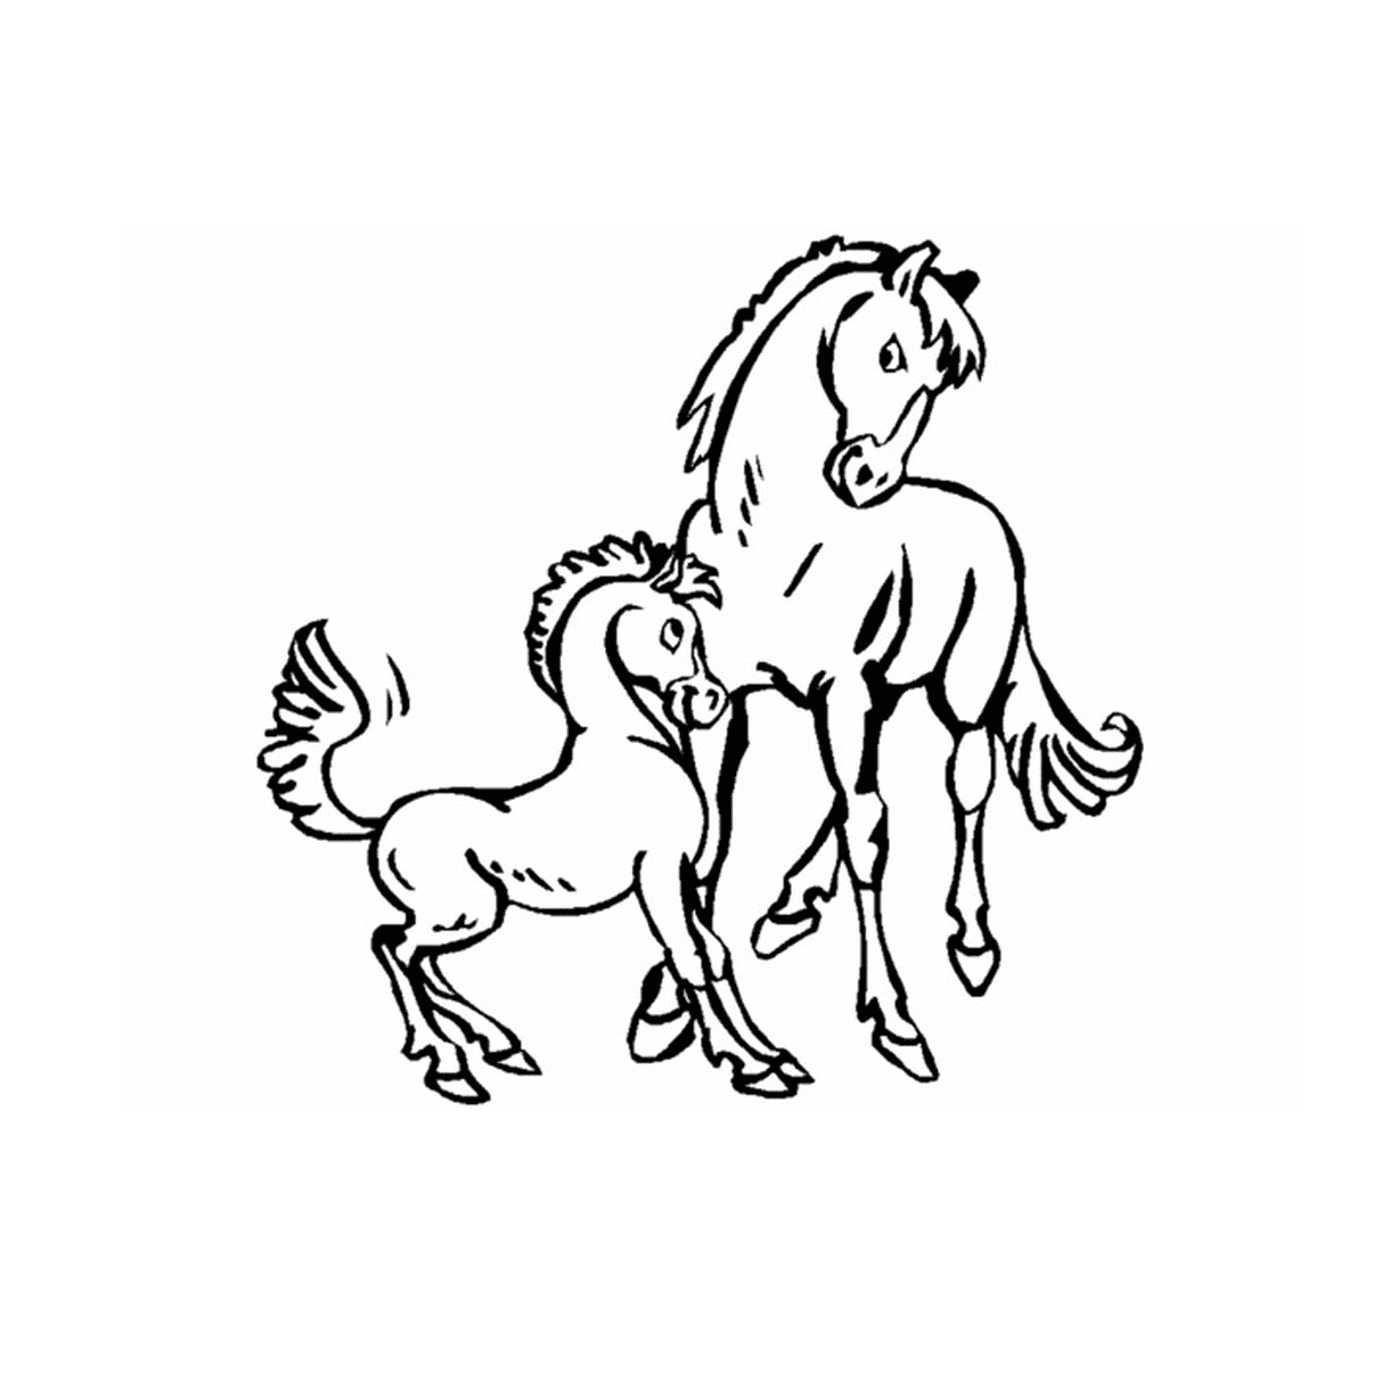  Pony y caballos, tierno vínculo familiar 